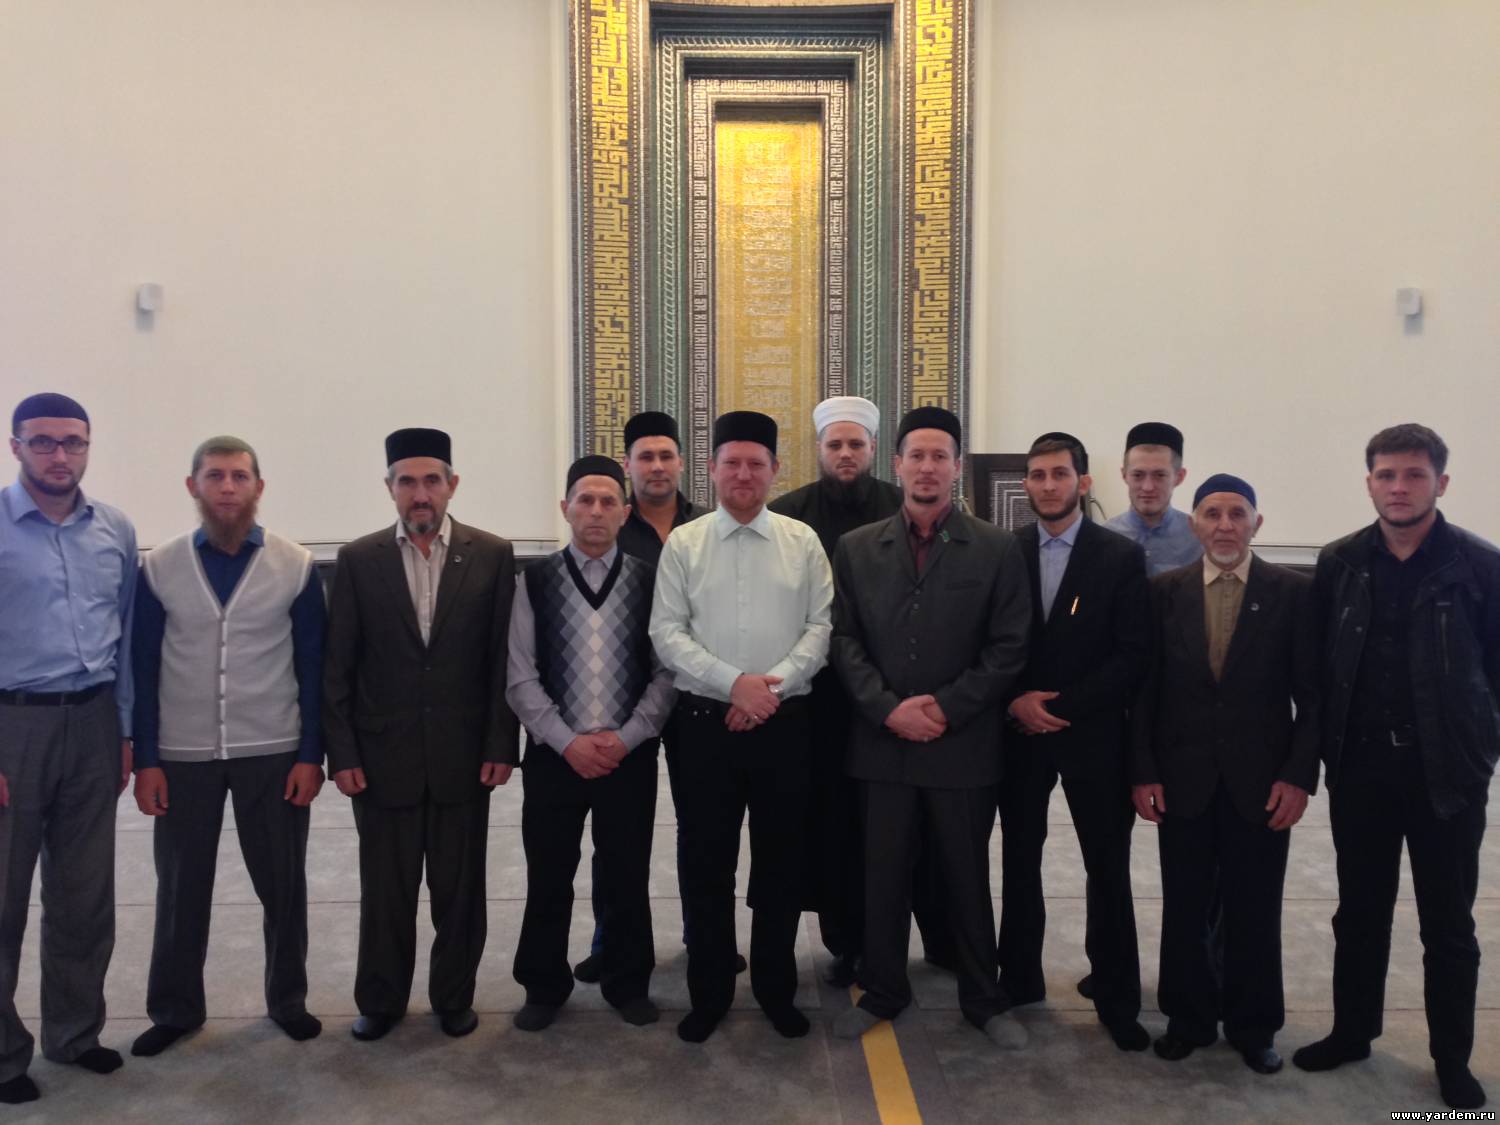 Имамы из российских регионов посетили мечеть "Ярдэм"